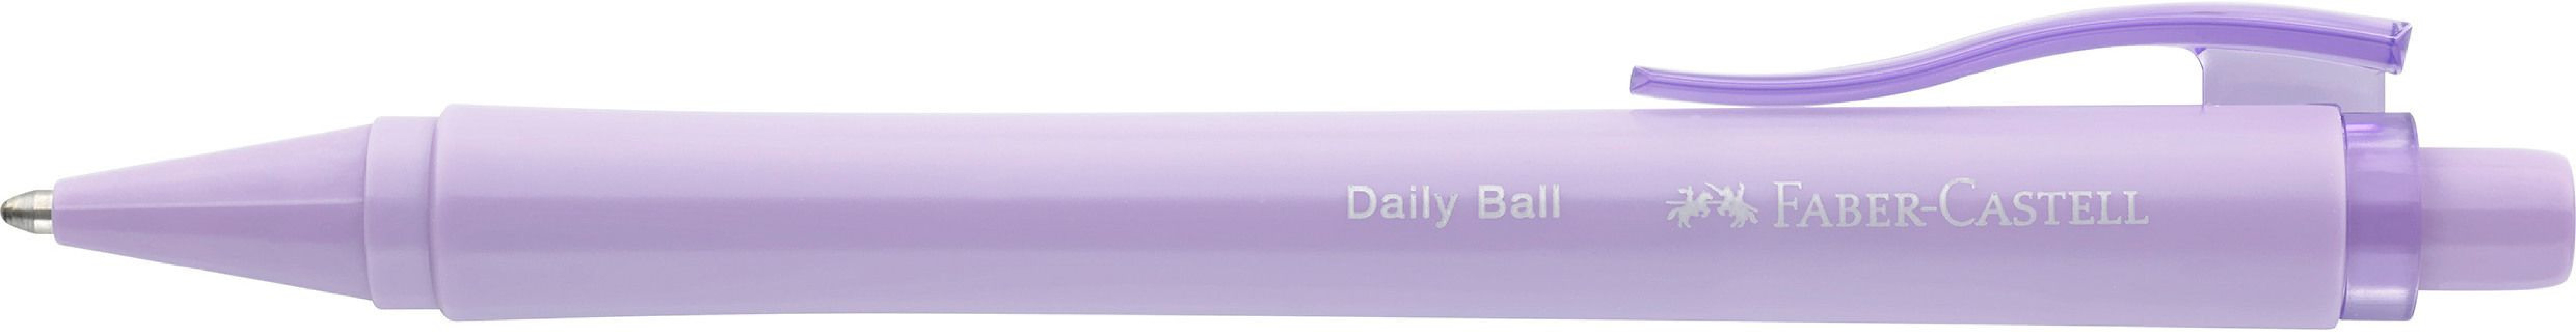 Faber Castell Daily ball XB Lilac 140688 ballpen